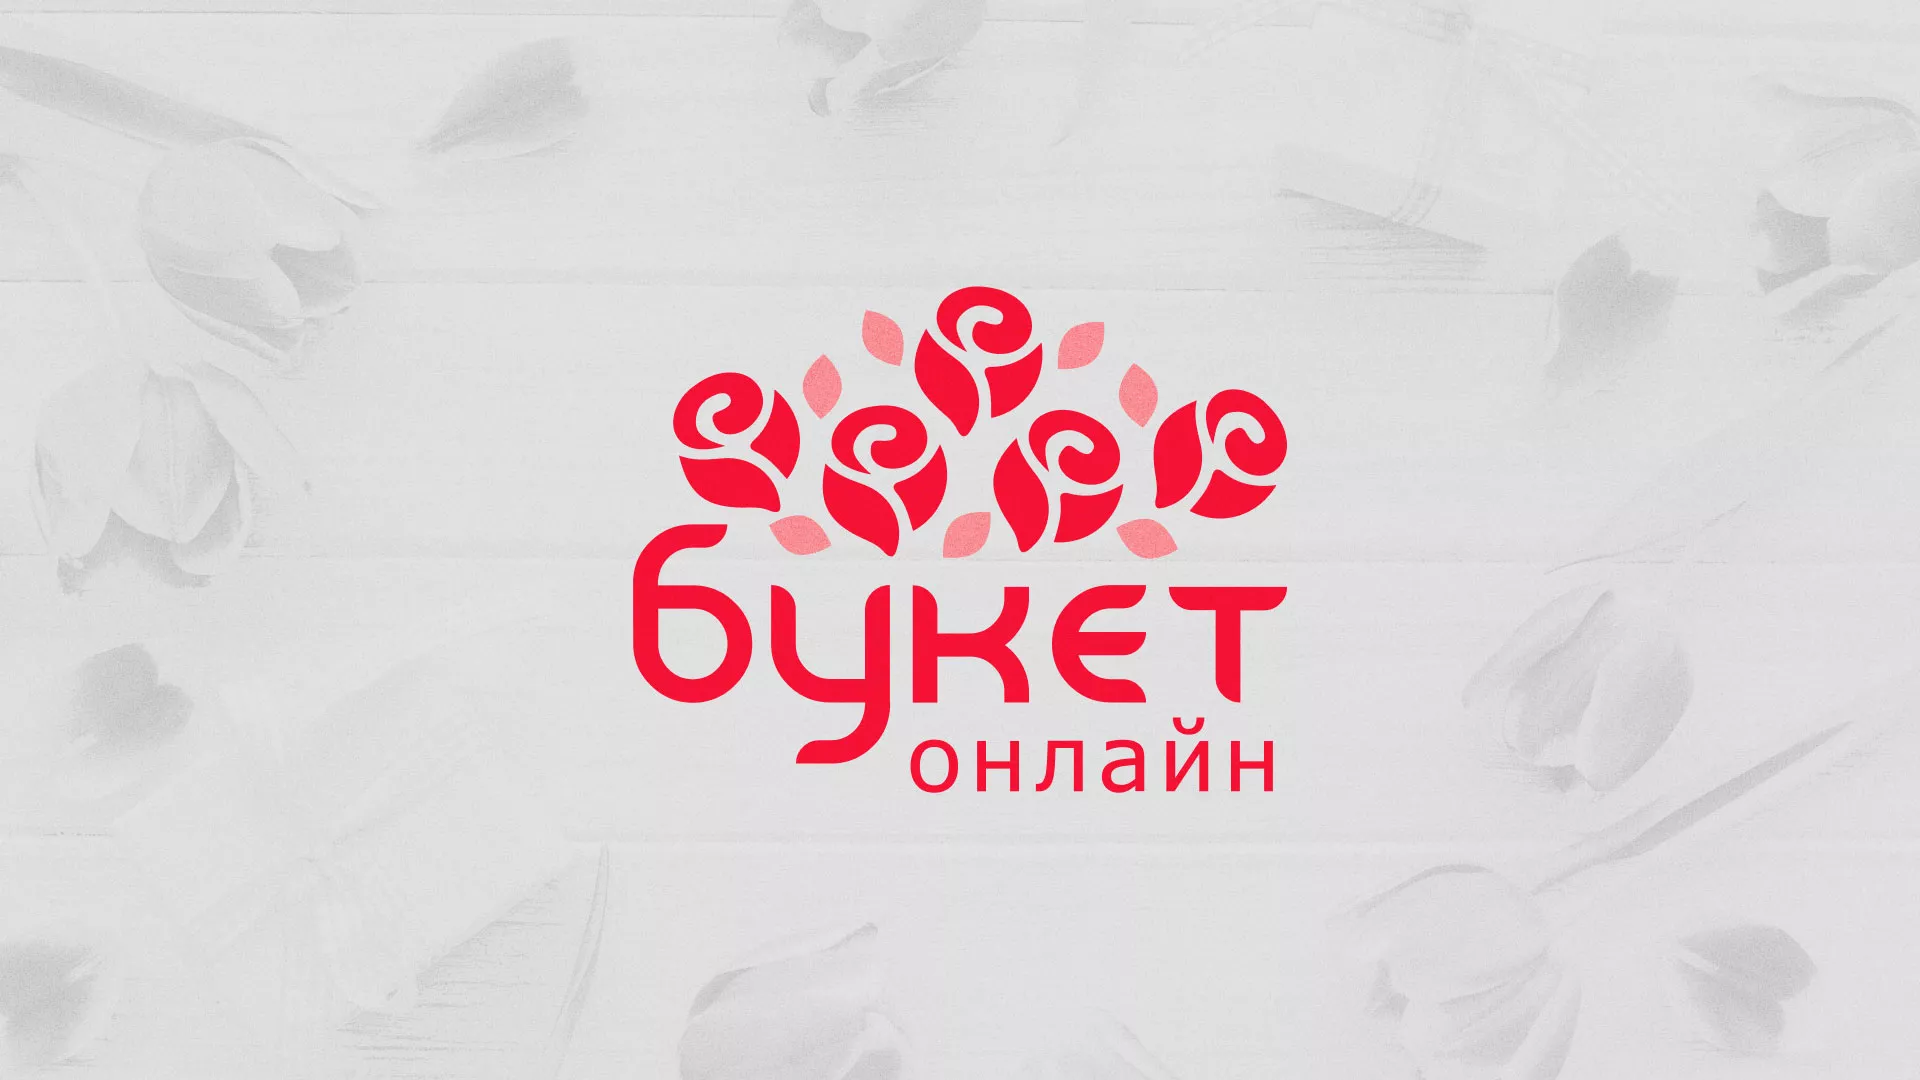 Создание интернет-магазина «Букет-онлайн» по цветам в Гавриловом Посаде